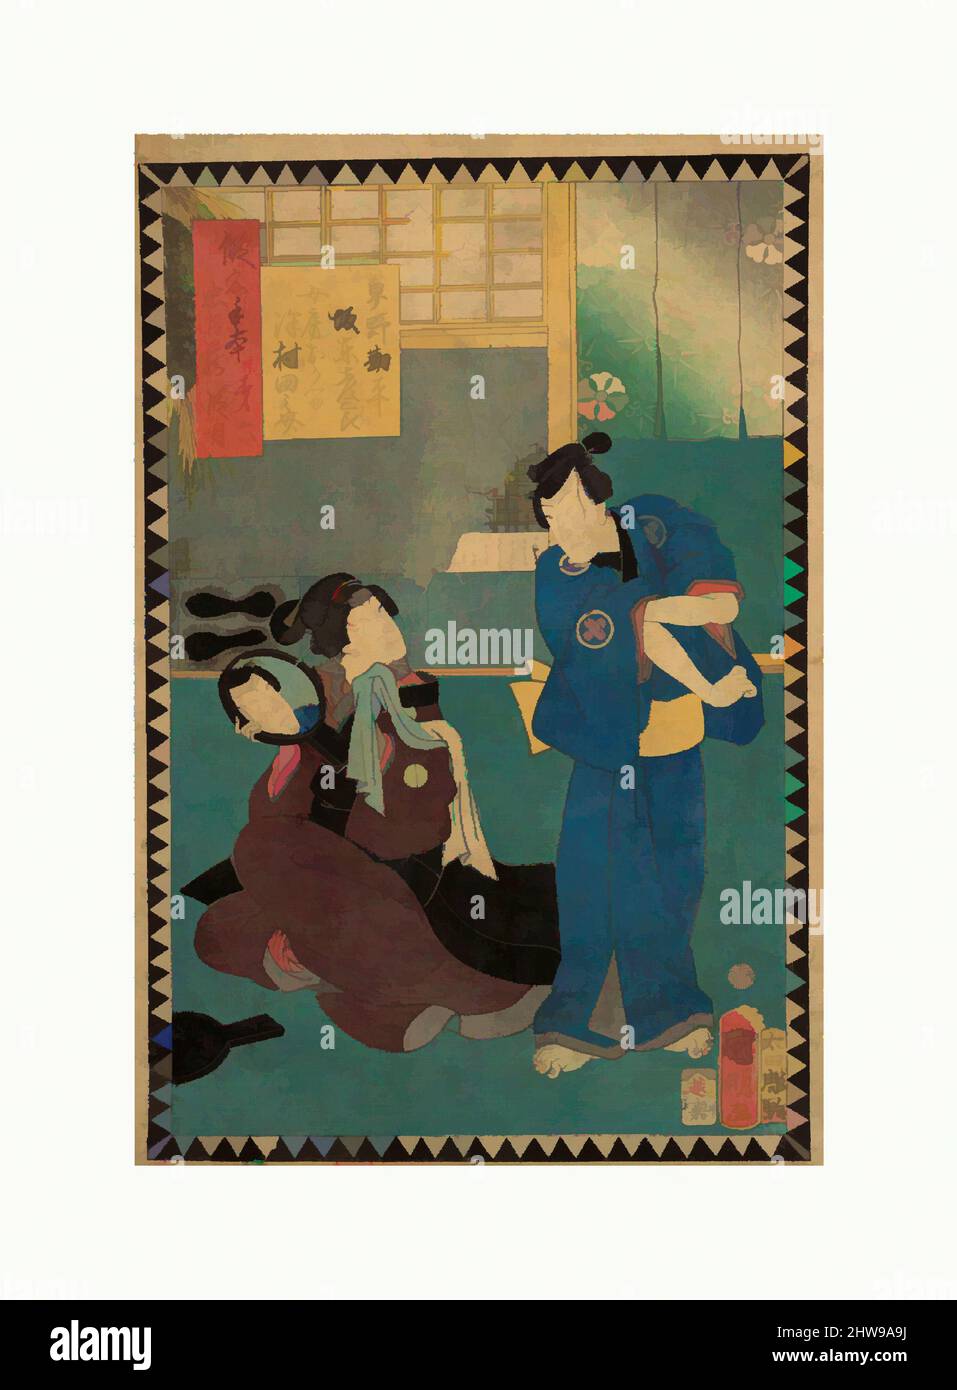 Art inspiré par l'Acte VI (Dai rokudanme): Acteurs Bandō Hikosaburō comme Hayano Kanpei et Sawamura Tanosuke comme sa femme Okaru, de la série The Storehouse of Loyal rails, a Primer (Kanadehon chūshingura), période Edo (1615–1868), 1862 (Bunkyū 2), 6th mois, Japon, Blocs de bois polychrome, œuvres classiques modernisées par Artotop avec une touche de modernité. Formes, couleur et valeur, impact visuel accrocheur sur l'art émotions par la liberté d'œuvres d'art d'une manière contemporaine. Un message intemporel qui cherche une nouvelle direction créative. Artistes qui se tournent vers le support numérique et créent le NFT Artotop Banque D'Images